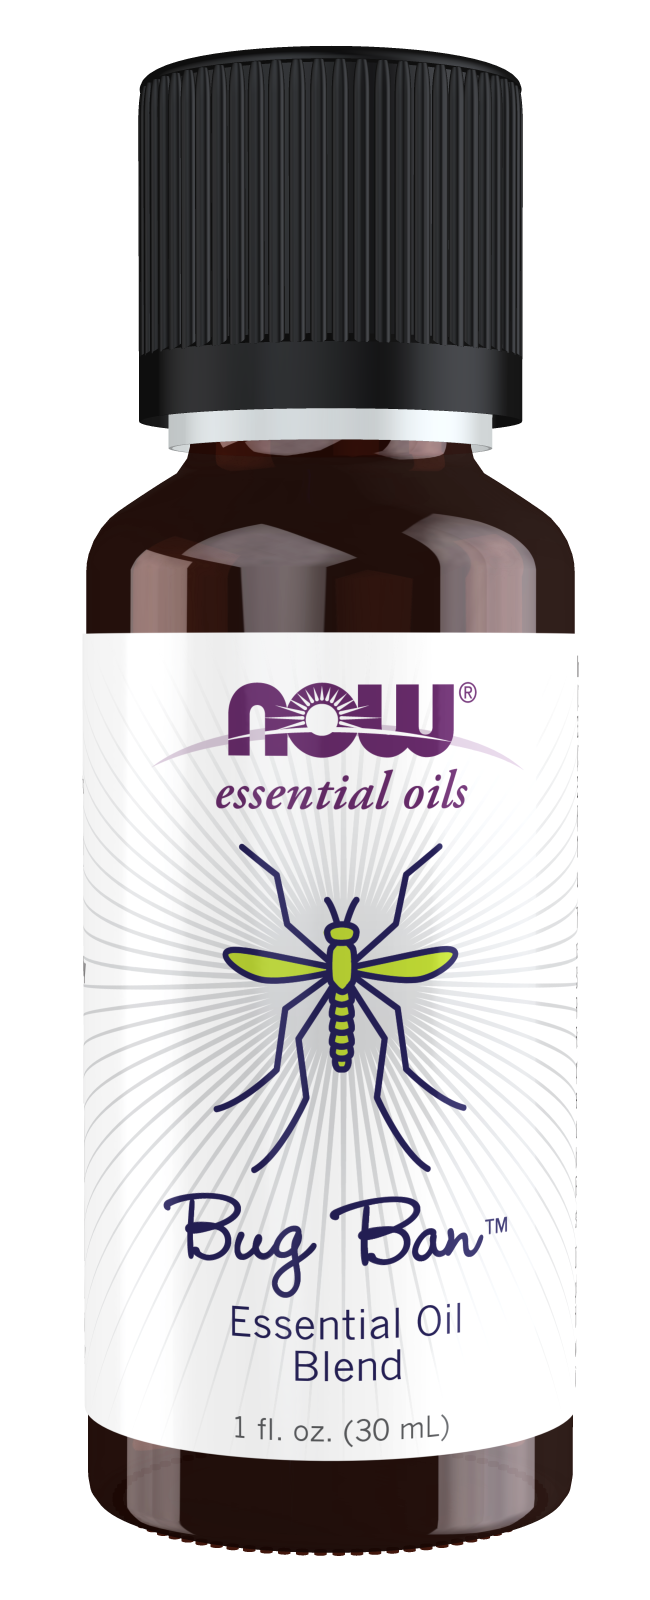 Bug Ban™ Essential Oil Blend - 1 fl. oz. Bottle Front